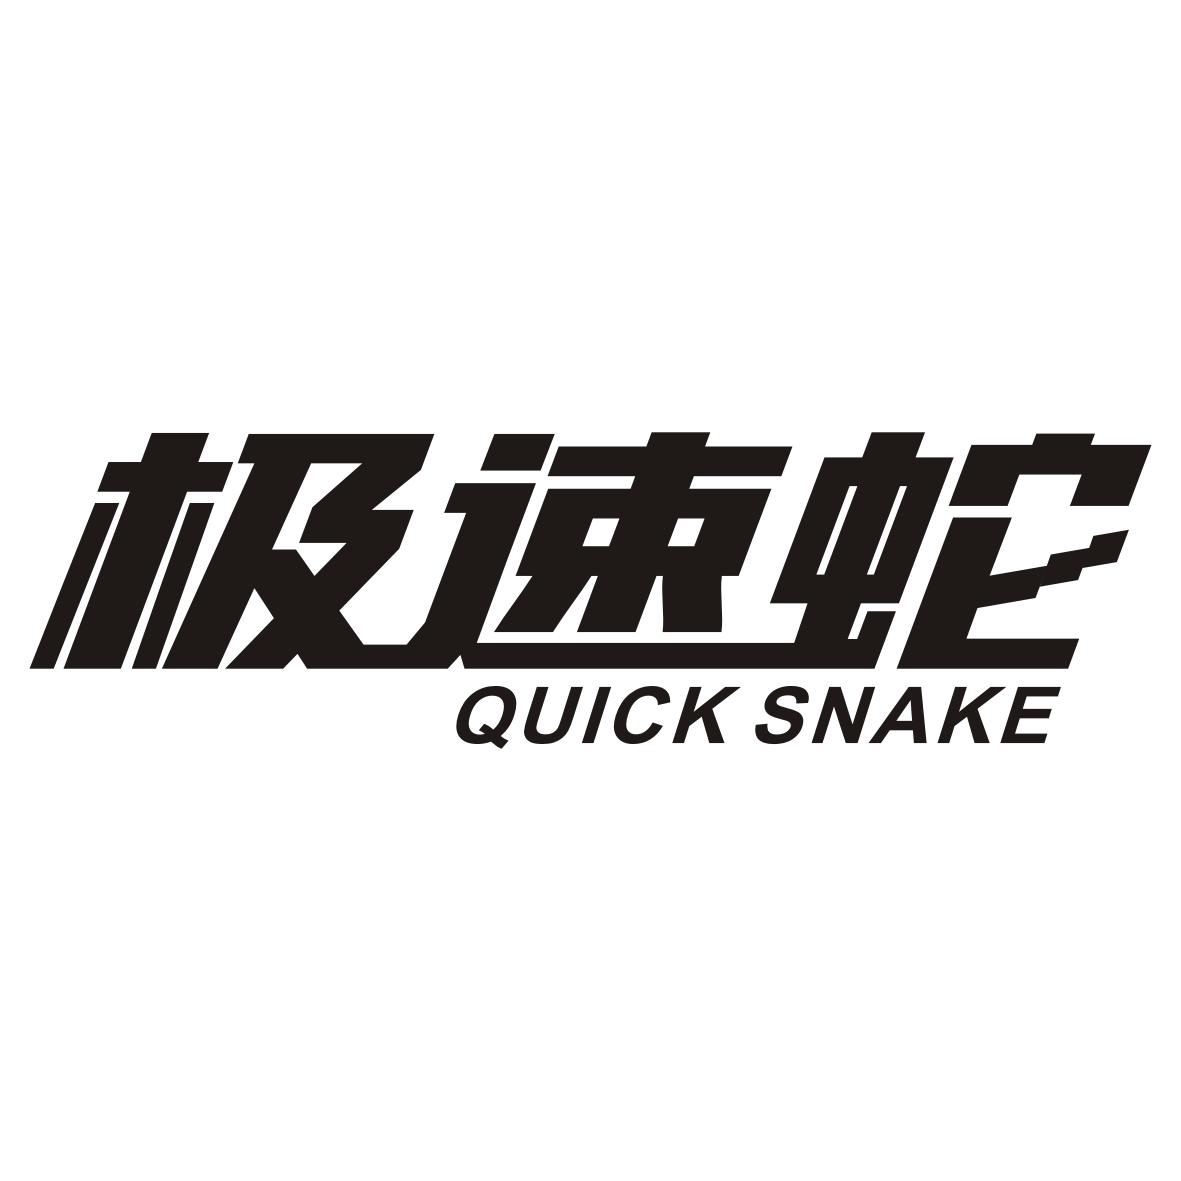 极速蛇
QUICK SNAKE